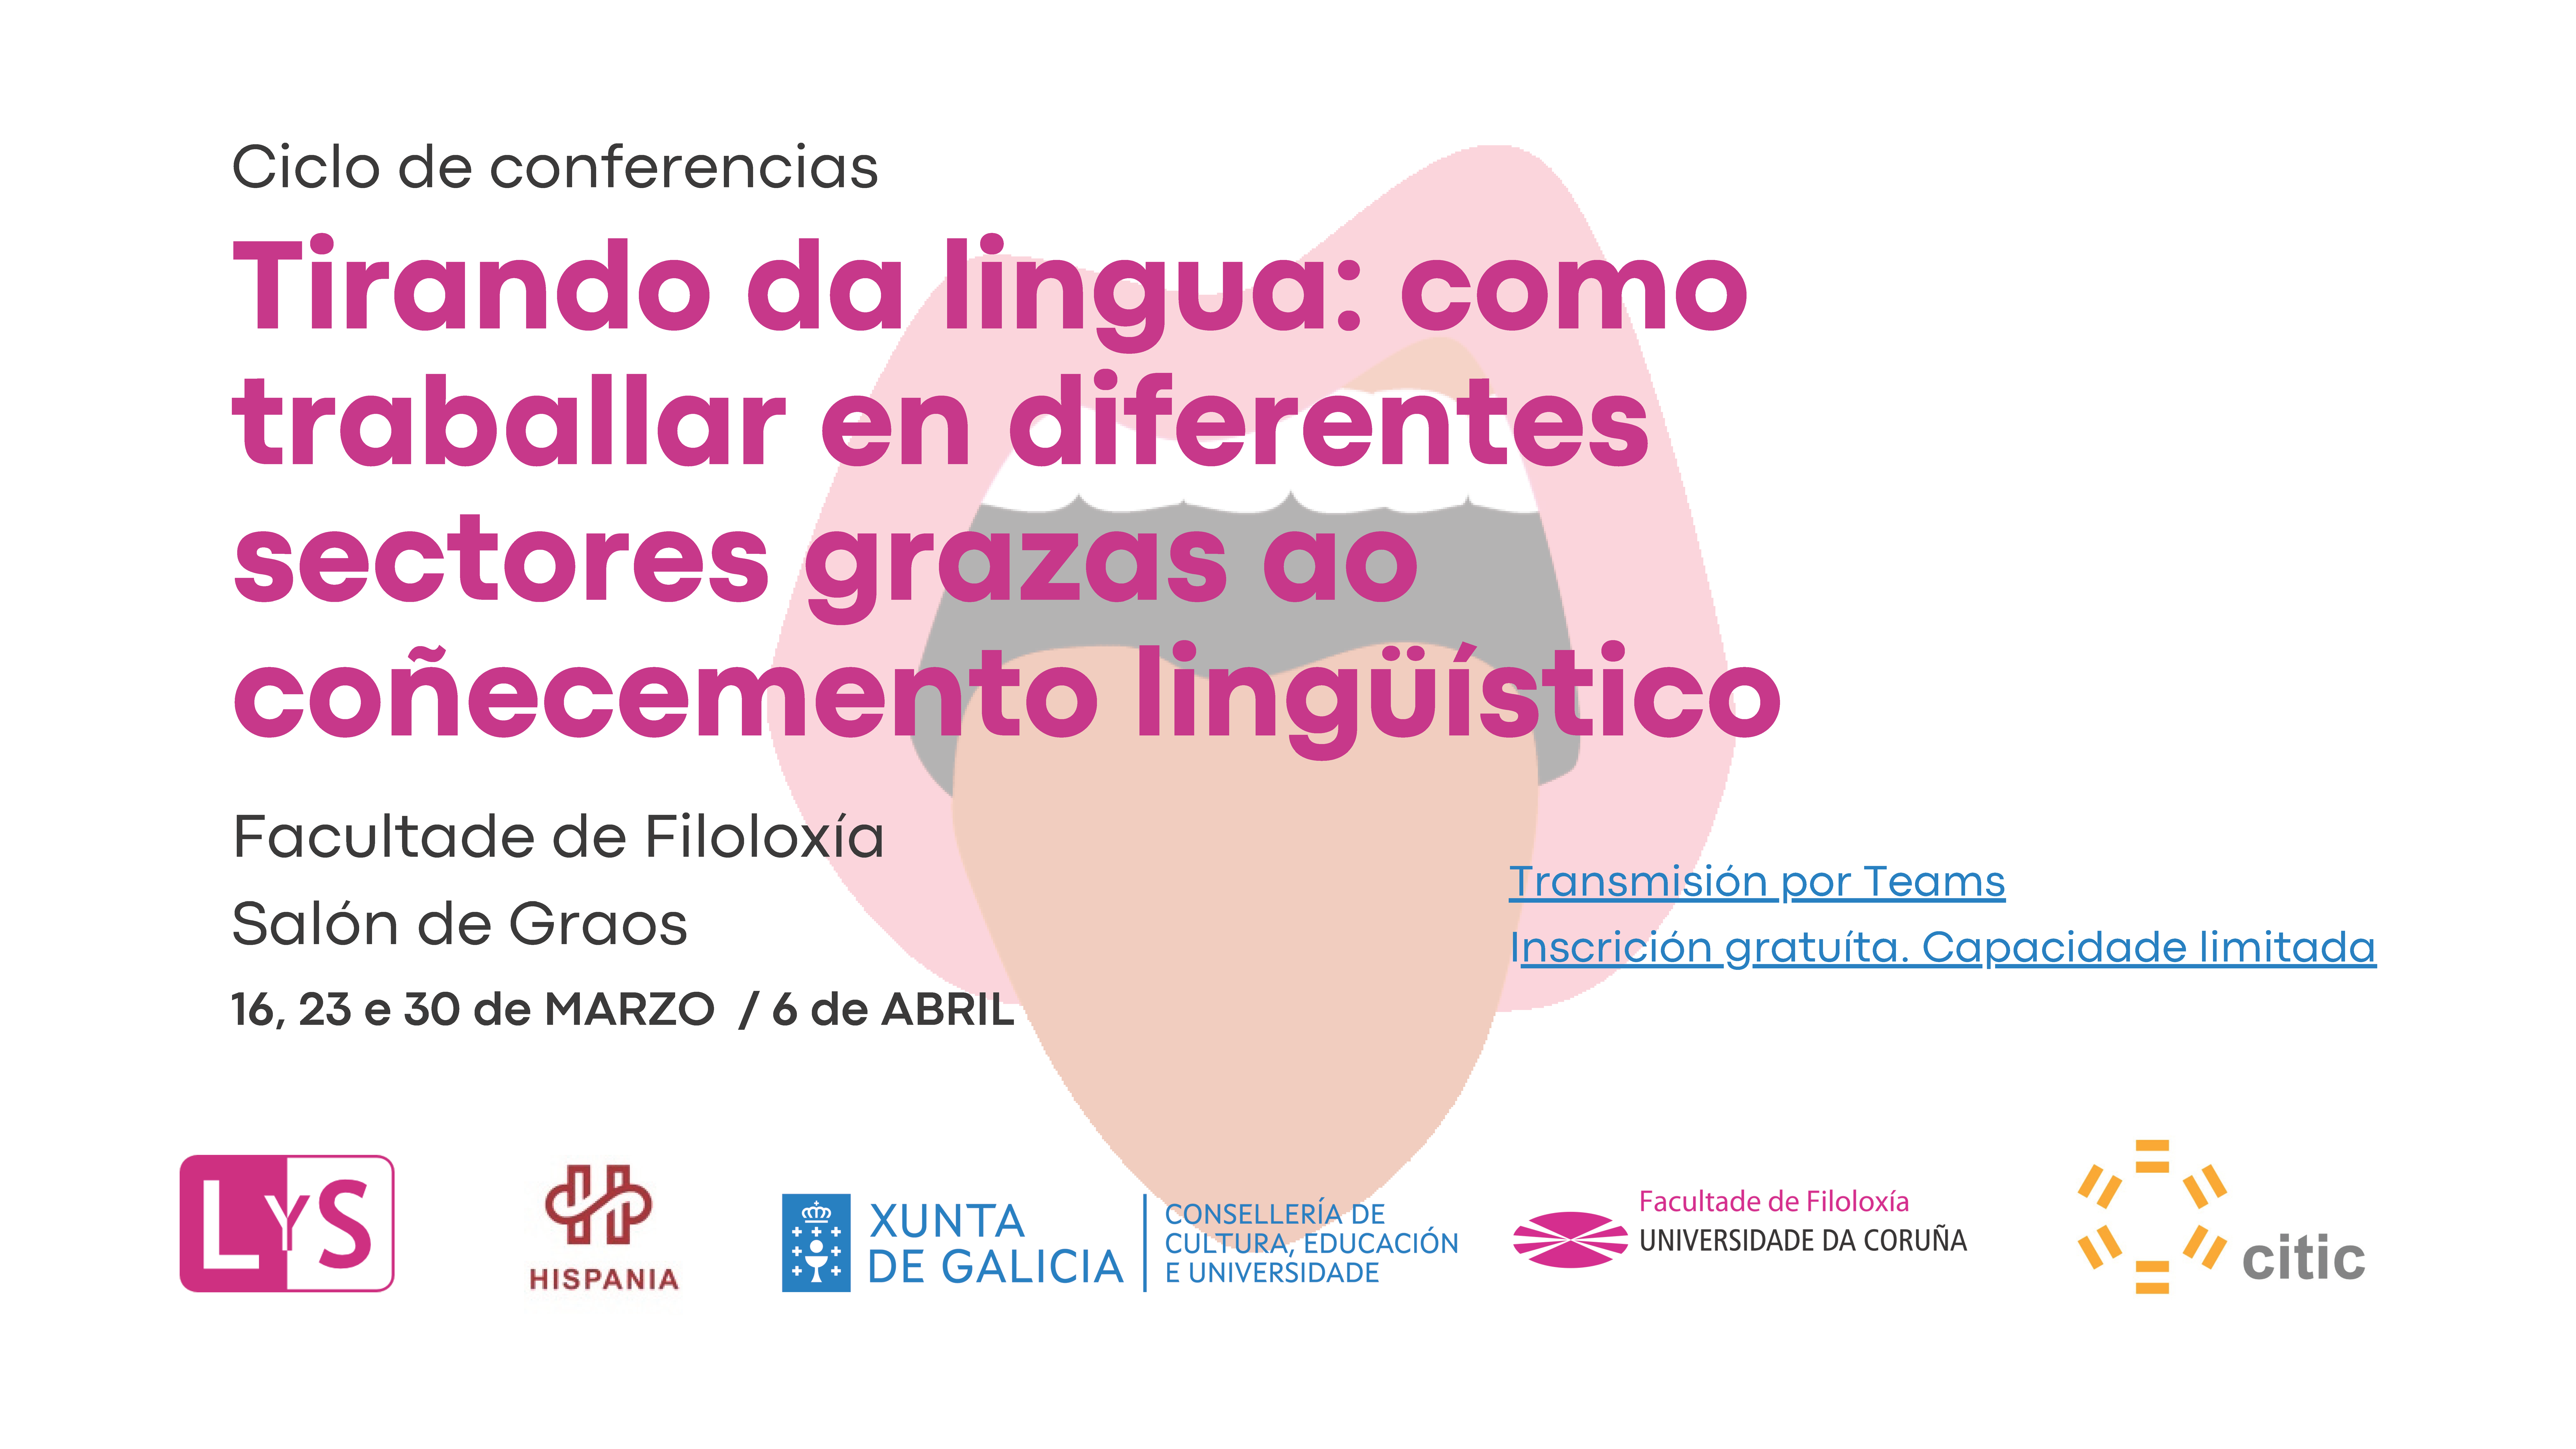 Tirando_da_lingua_Ciclo_de_conferencias